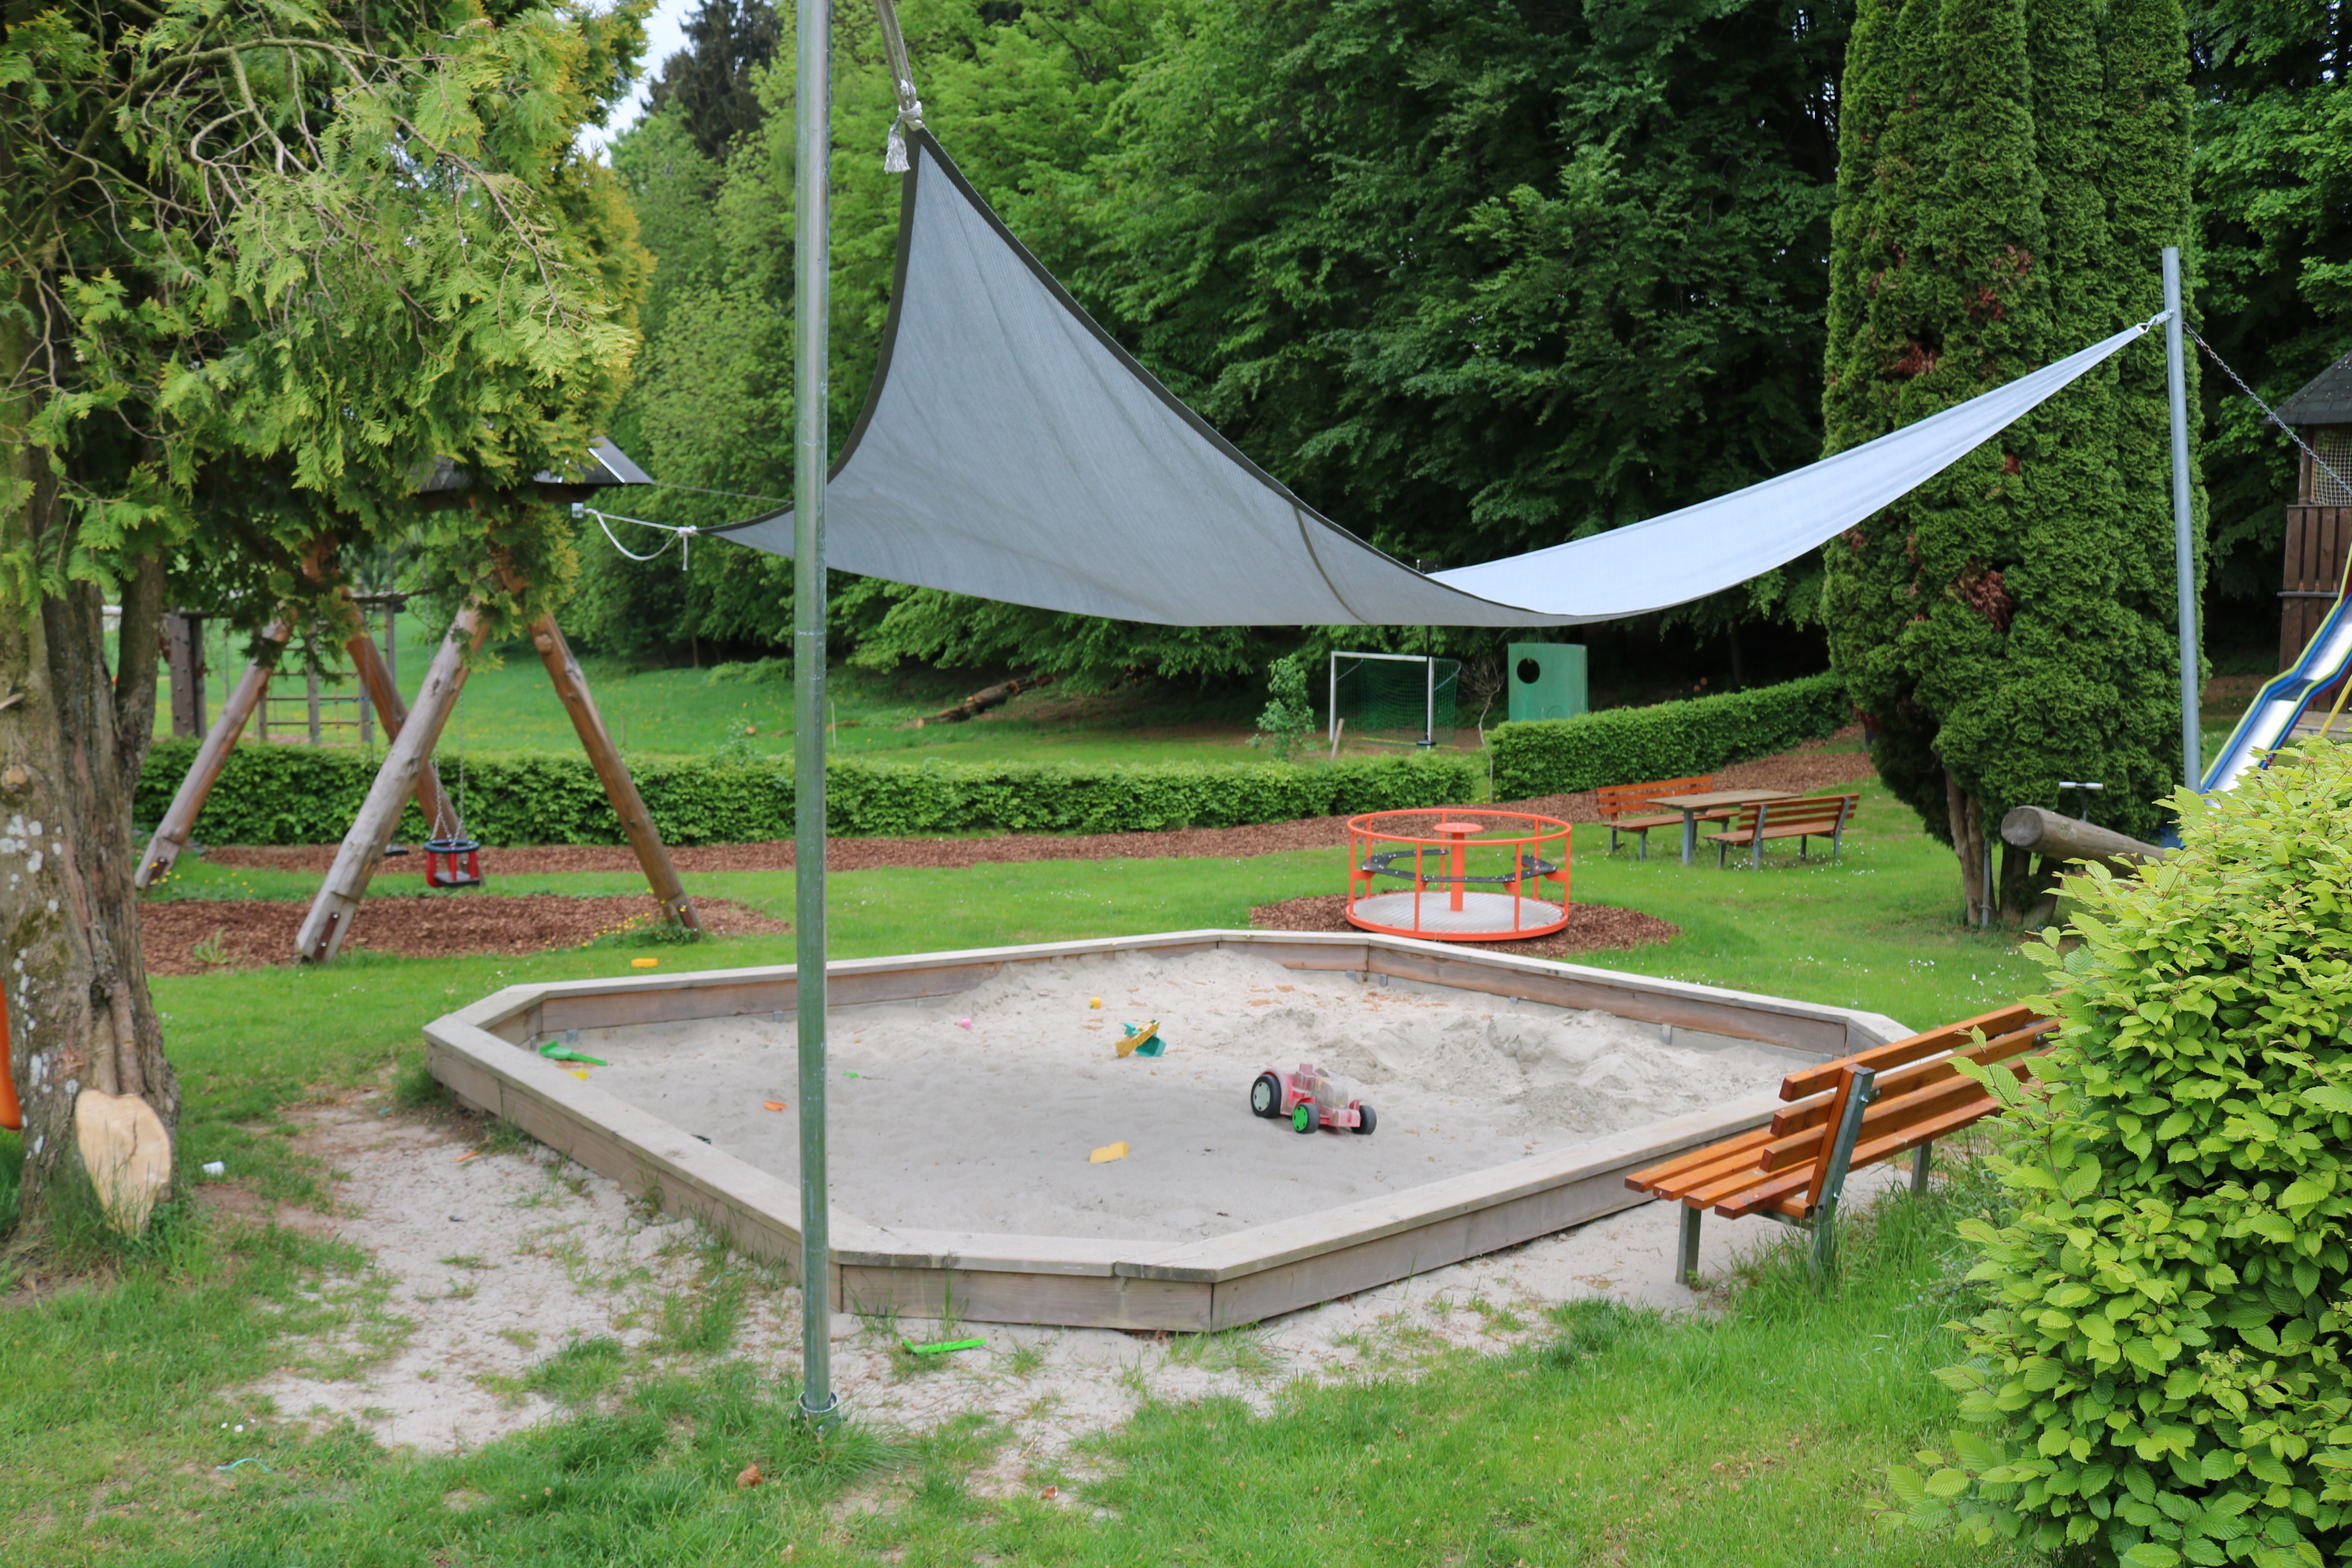  Spielplatz Siedlerheim 